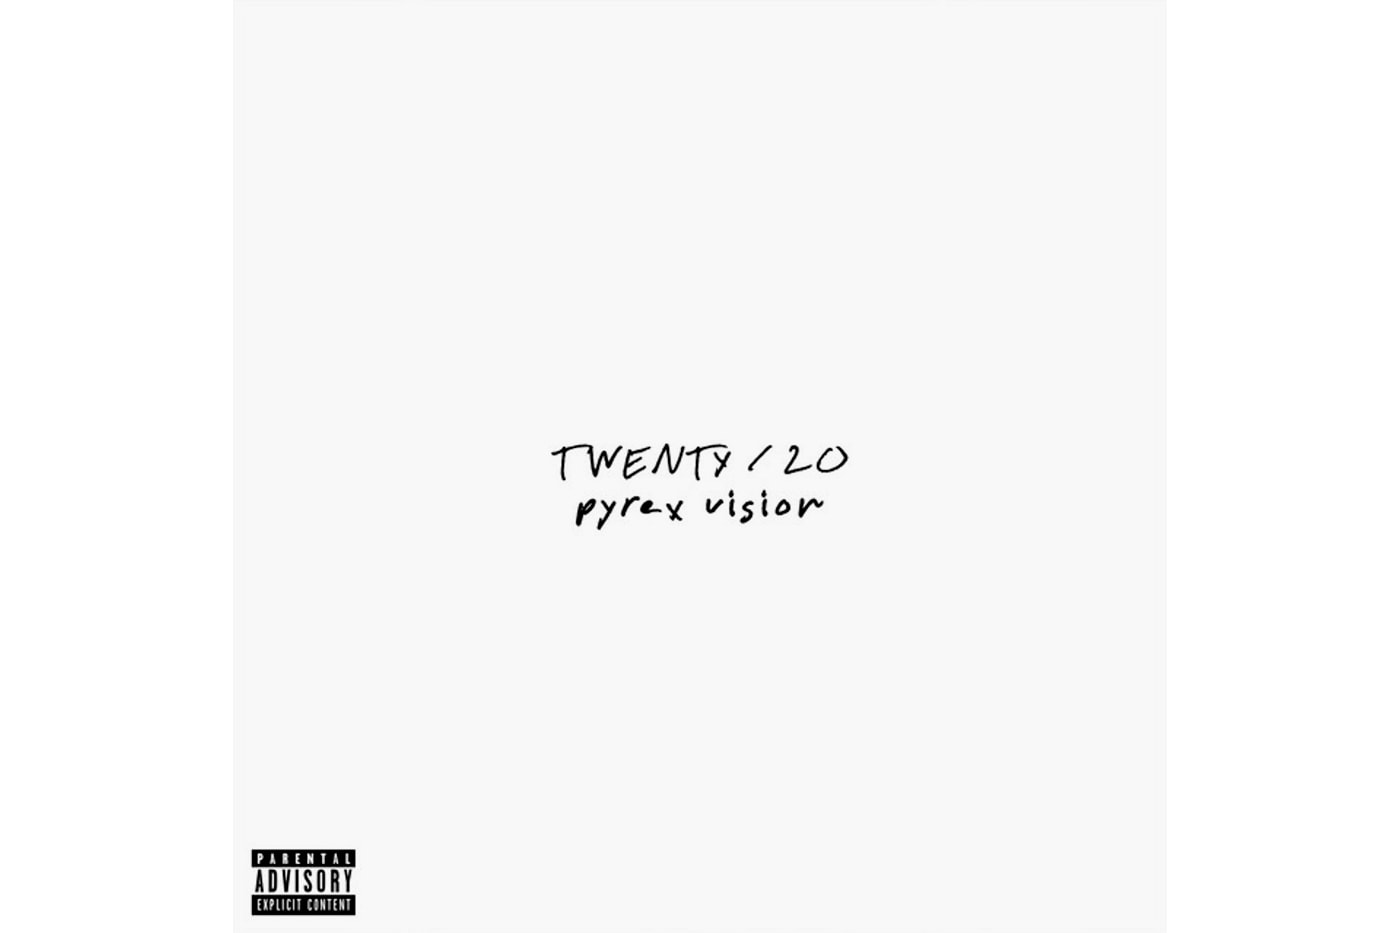 Jeezy 'Twenty/20 Pyrex Vision' Album Stream hip-hop rap south trap listen now spotify apple music 